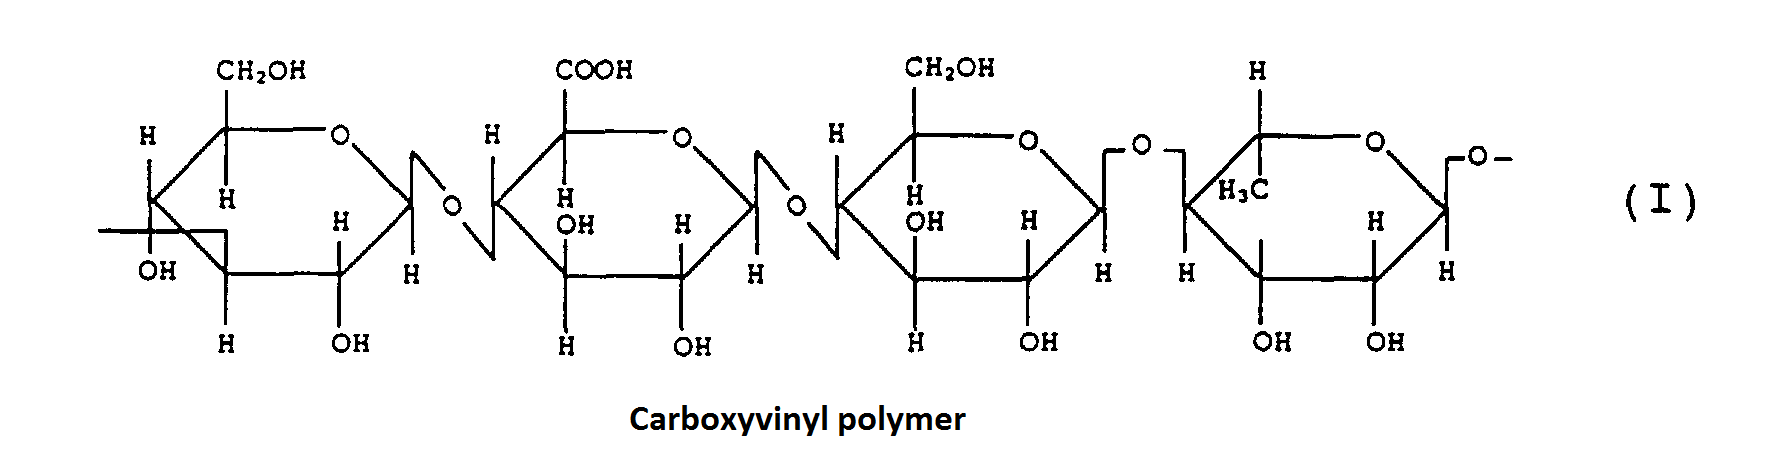 Carboxyvinyl polymer